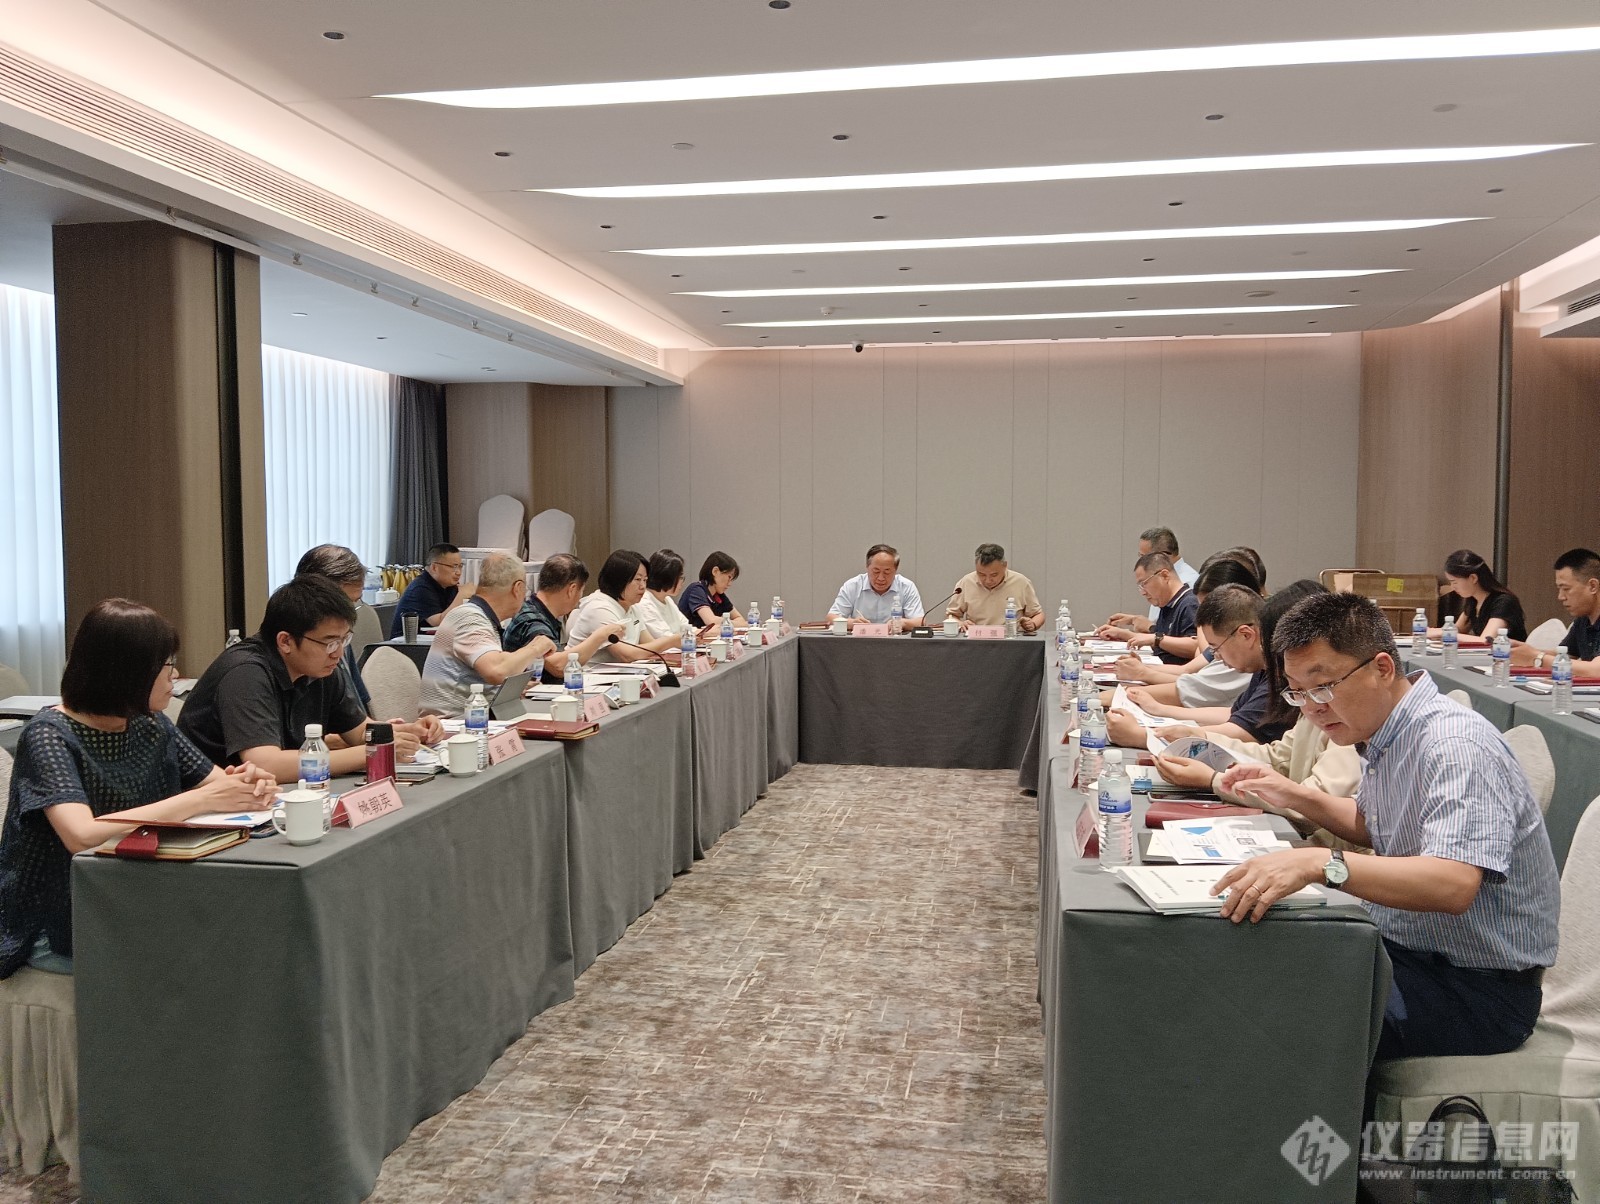 乐氏科技受邀参加中国环境监测总站主办的傅里叶变换红外光谱精准测量技术领域研讨会